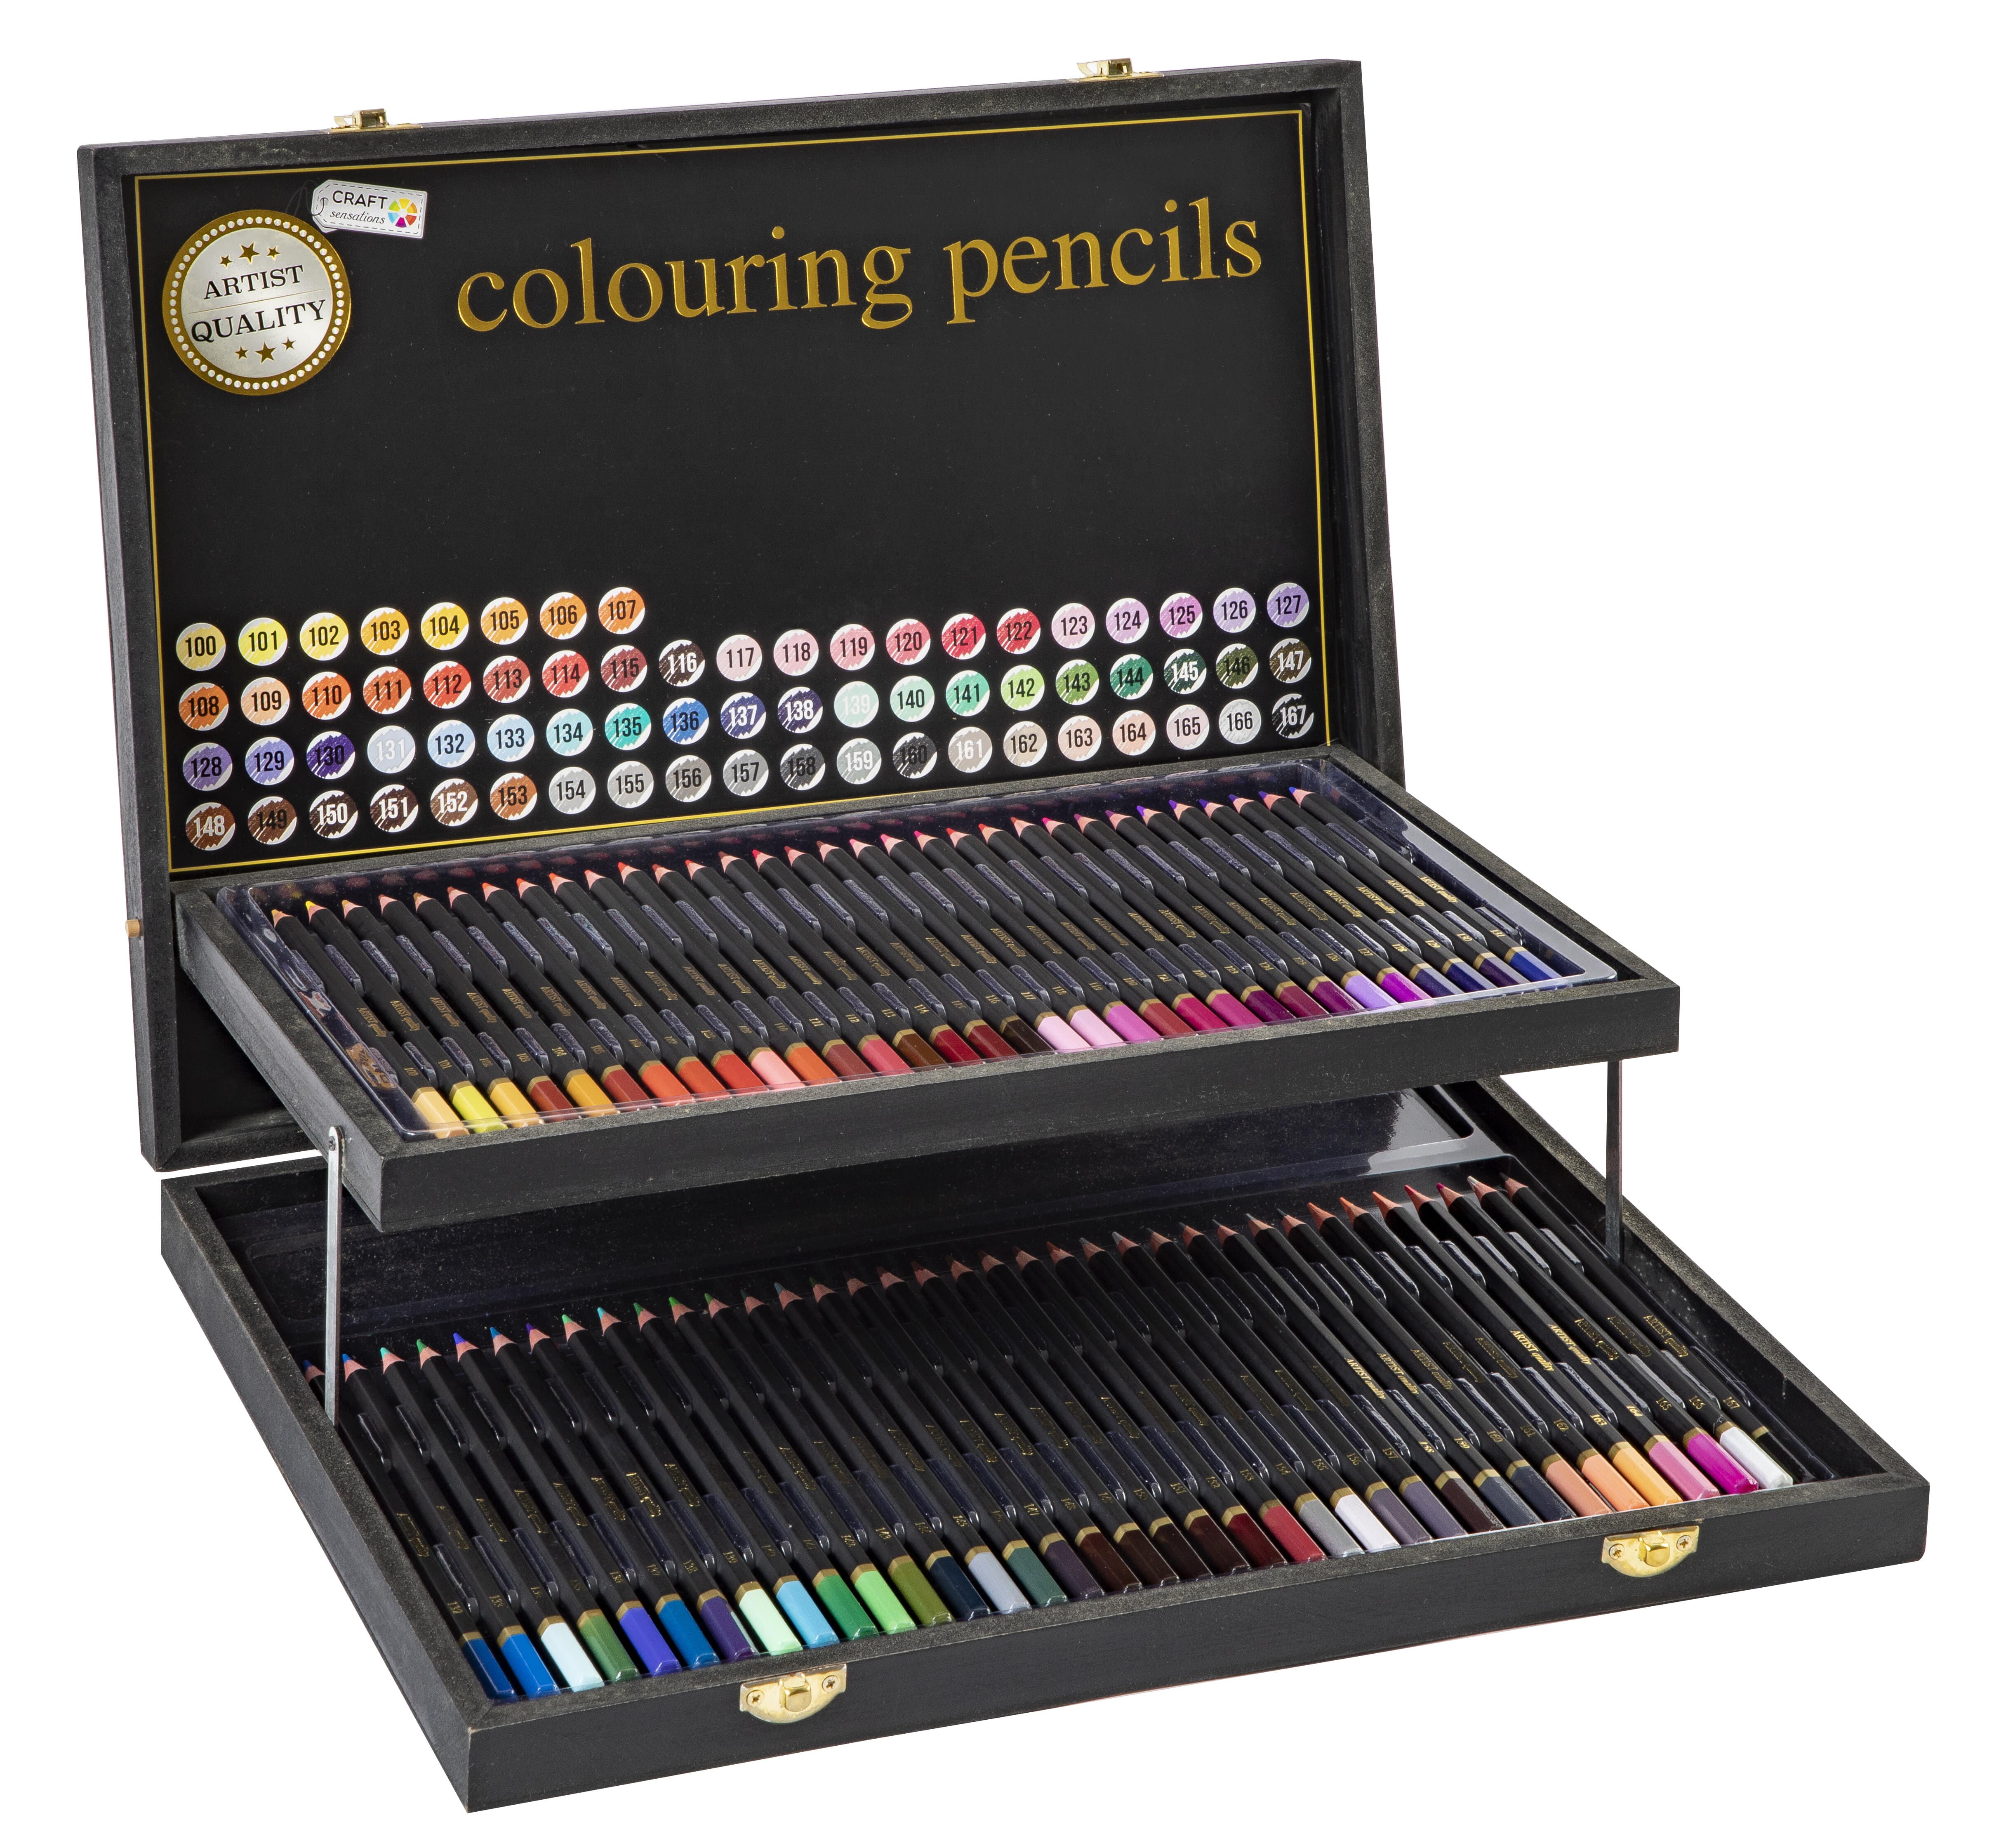 Craft Sensations - Colouring pencils, 68 pcs in wooden box (CR0472)